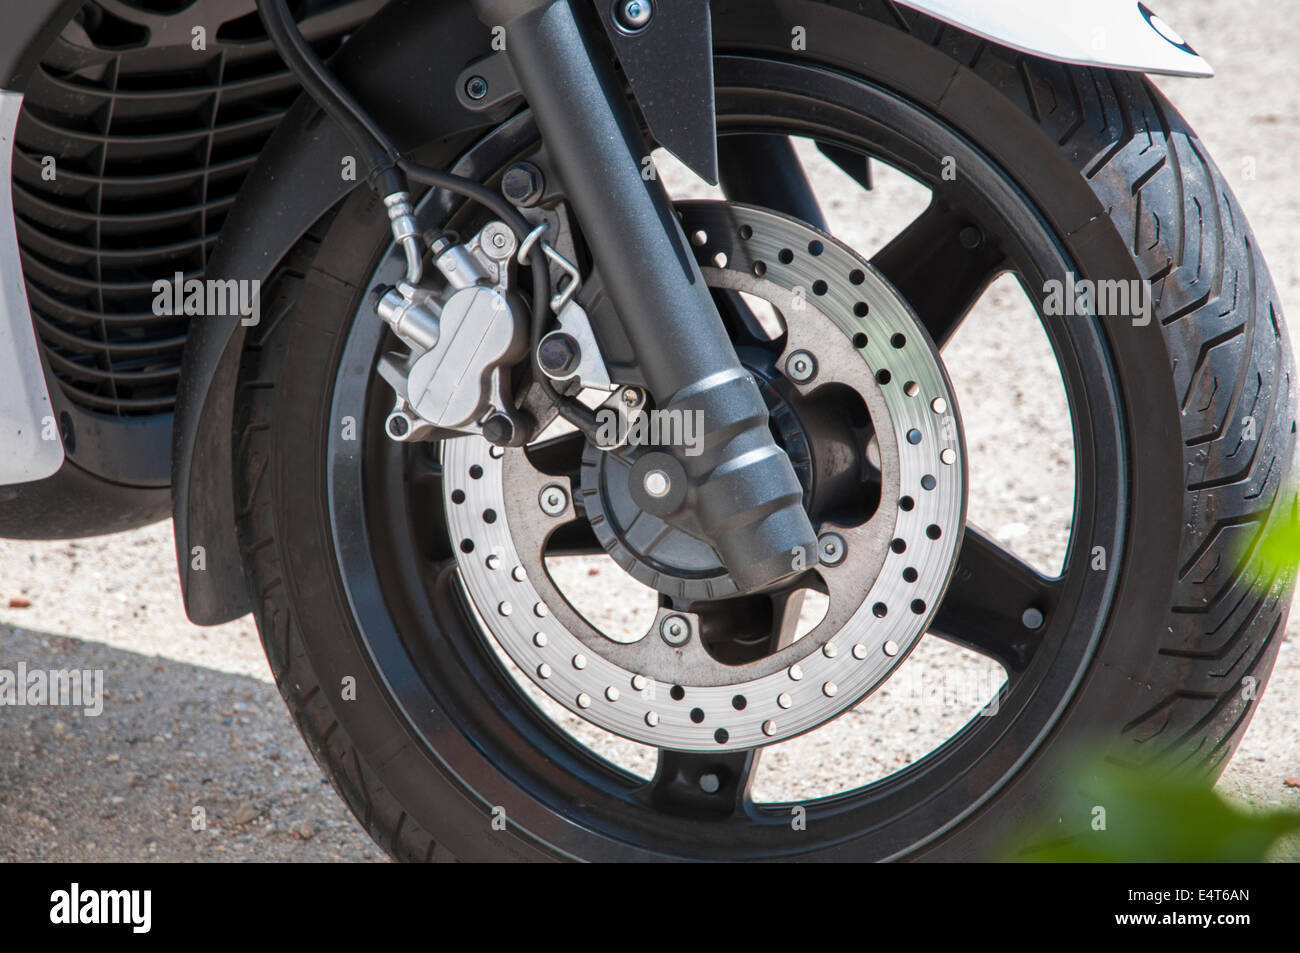 Scheibenbremse Motorrad Bremssättel, die zu beobachten sind Stockfotografie  - Alamy